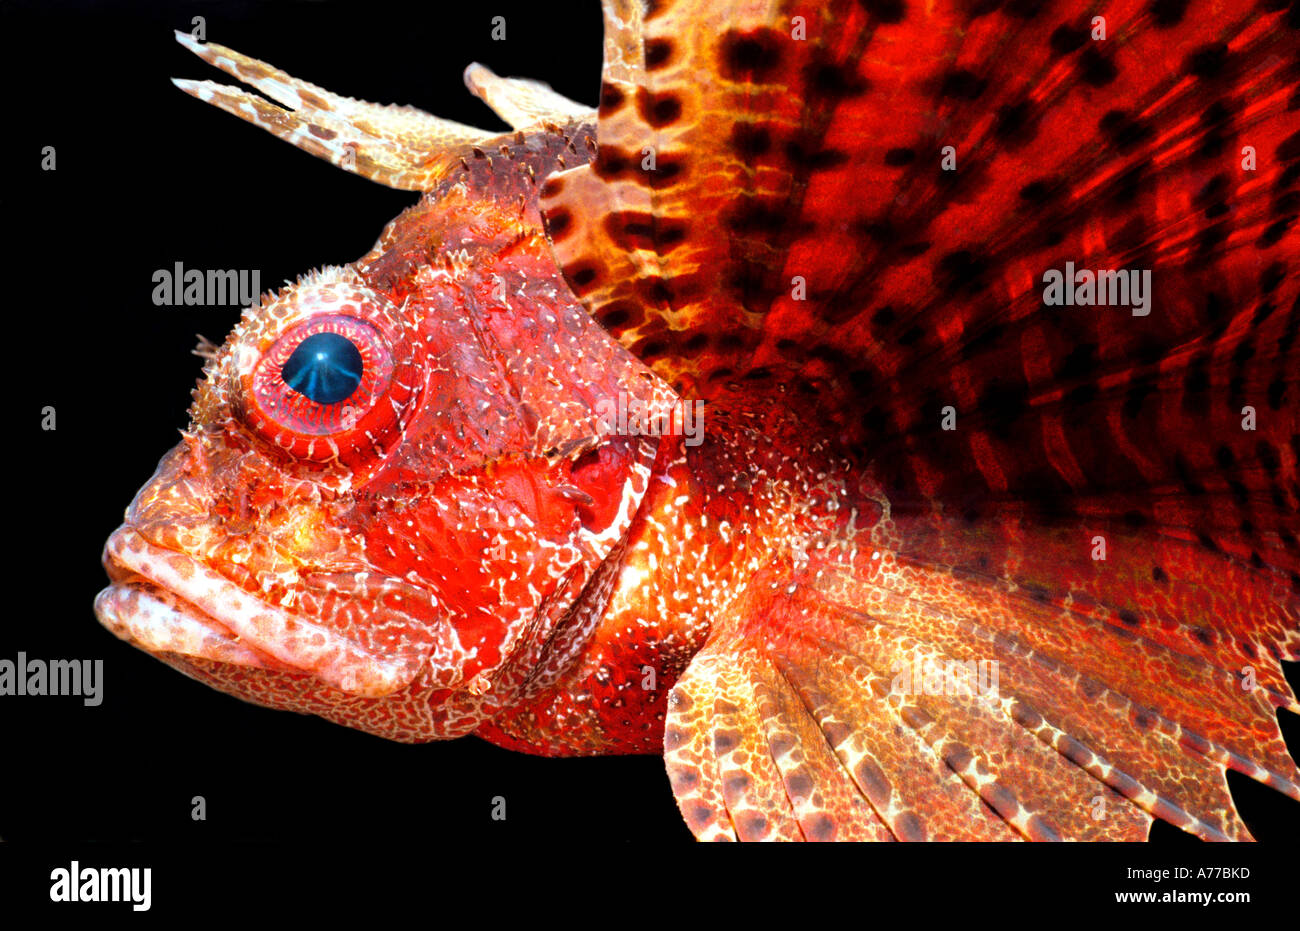 Profil von einer roten Shortfin Rotfeuerfische (Dendrochirus Brachypterus) vor einem schwarzen Hintergrund hautnah. Stockfoto